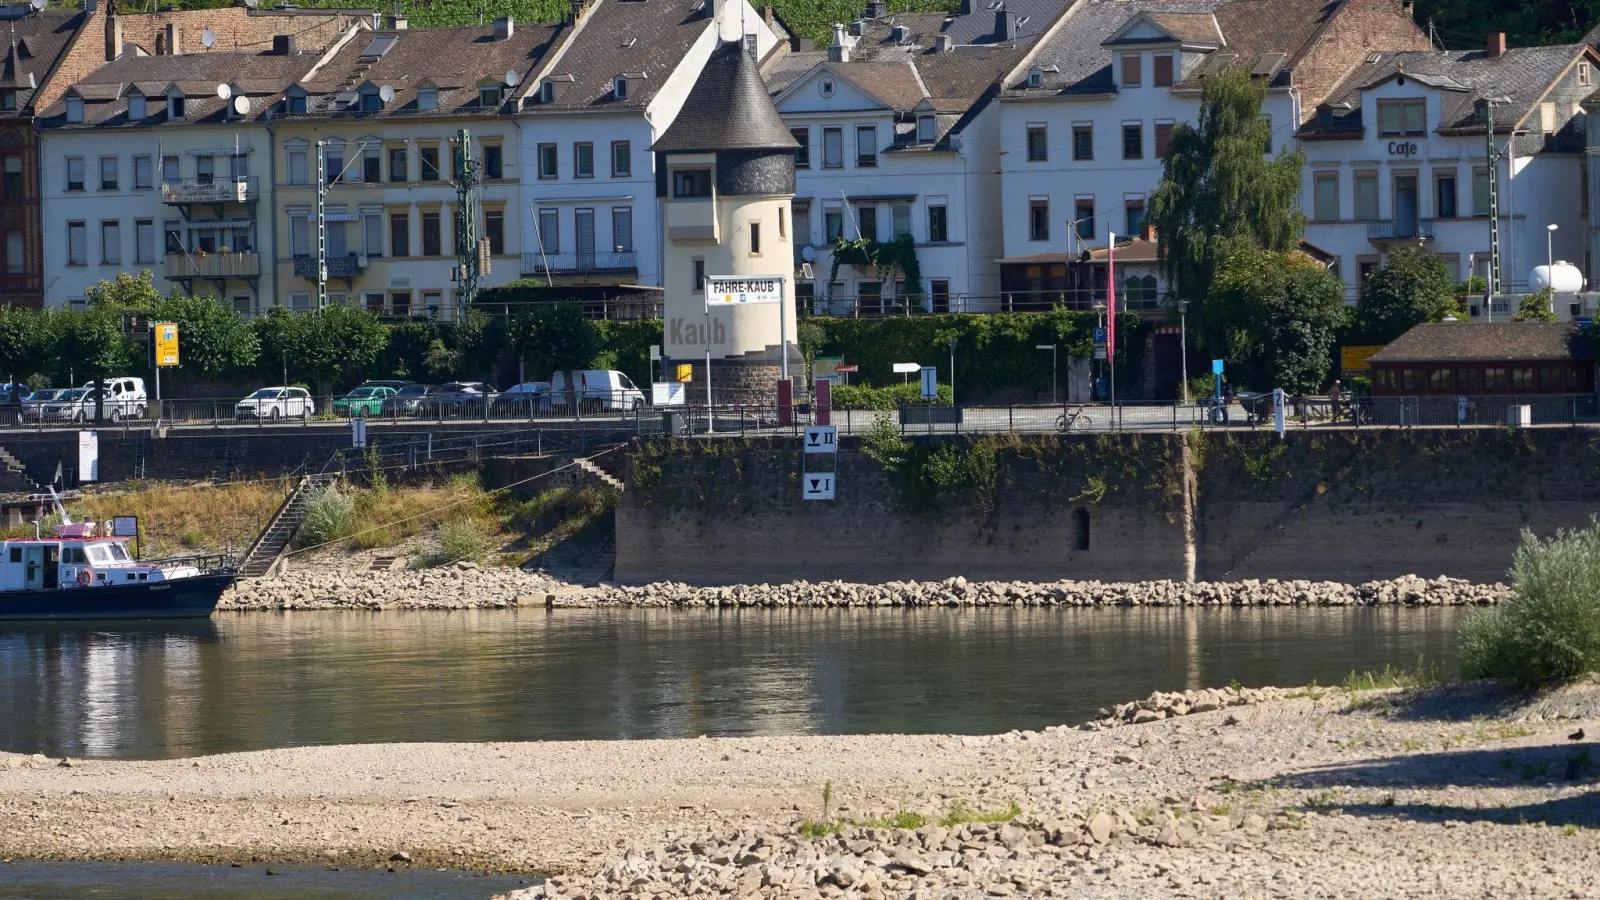 Der Pegelturm am Mittelrhein bei Kaub. In Kaub wird einer der wichtigsten Bezugspegel für die Rheinschifffahrt am Mittelrhein gemessen. (Foto: Thomas Frey/dpa)